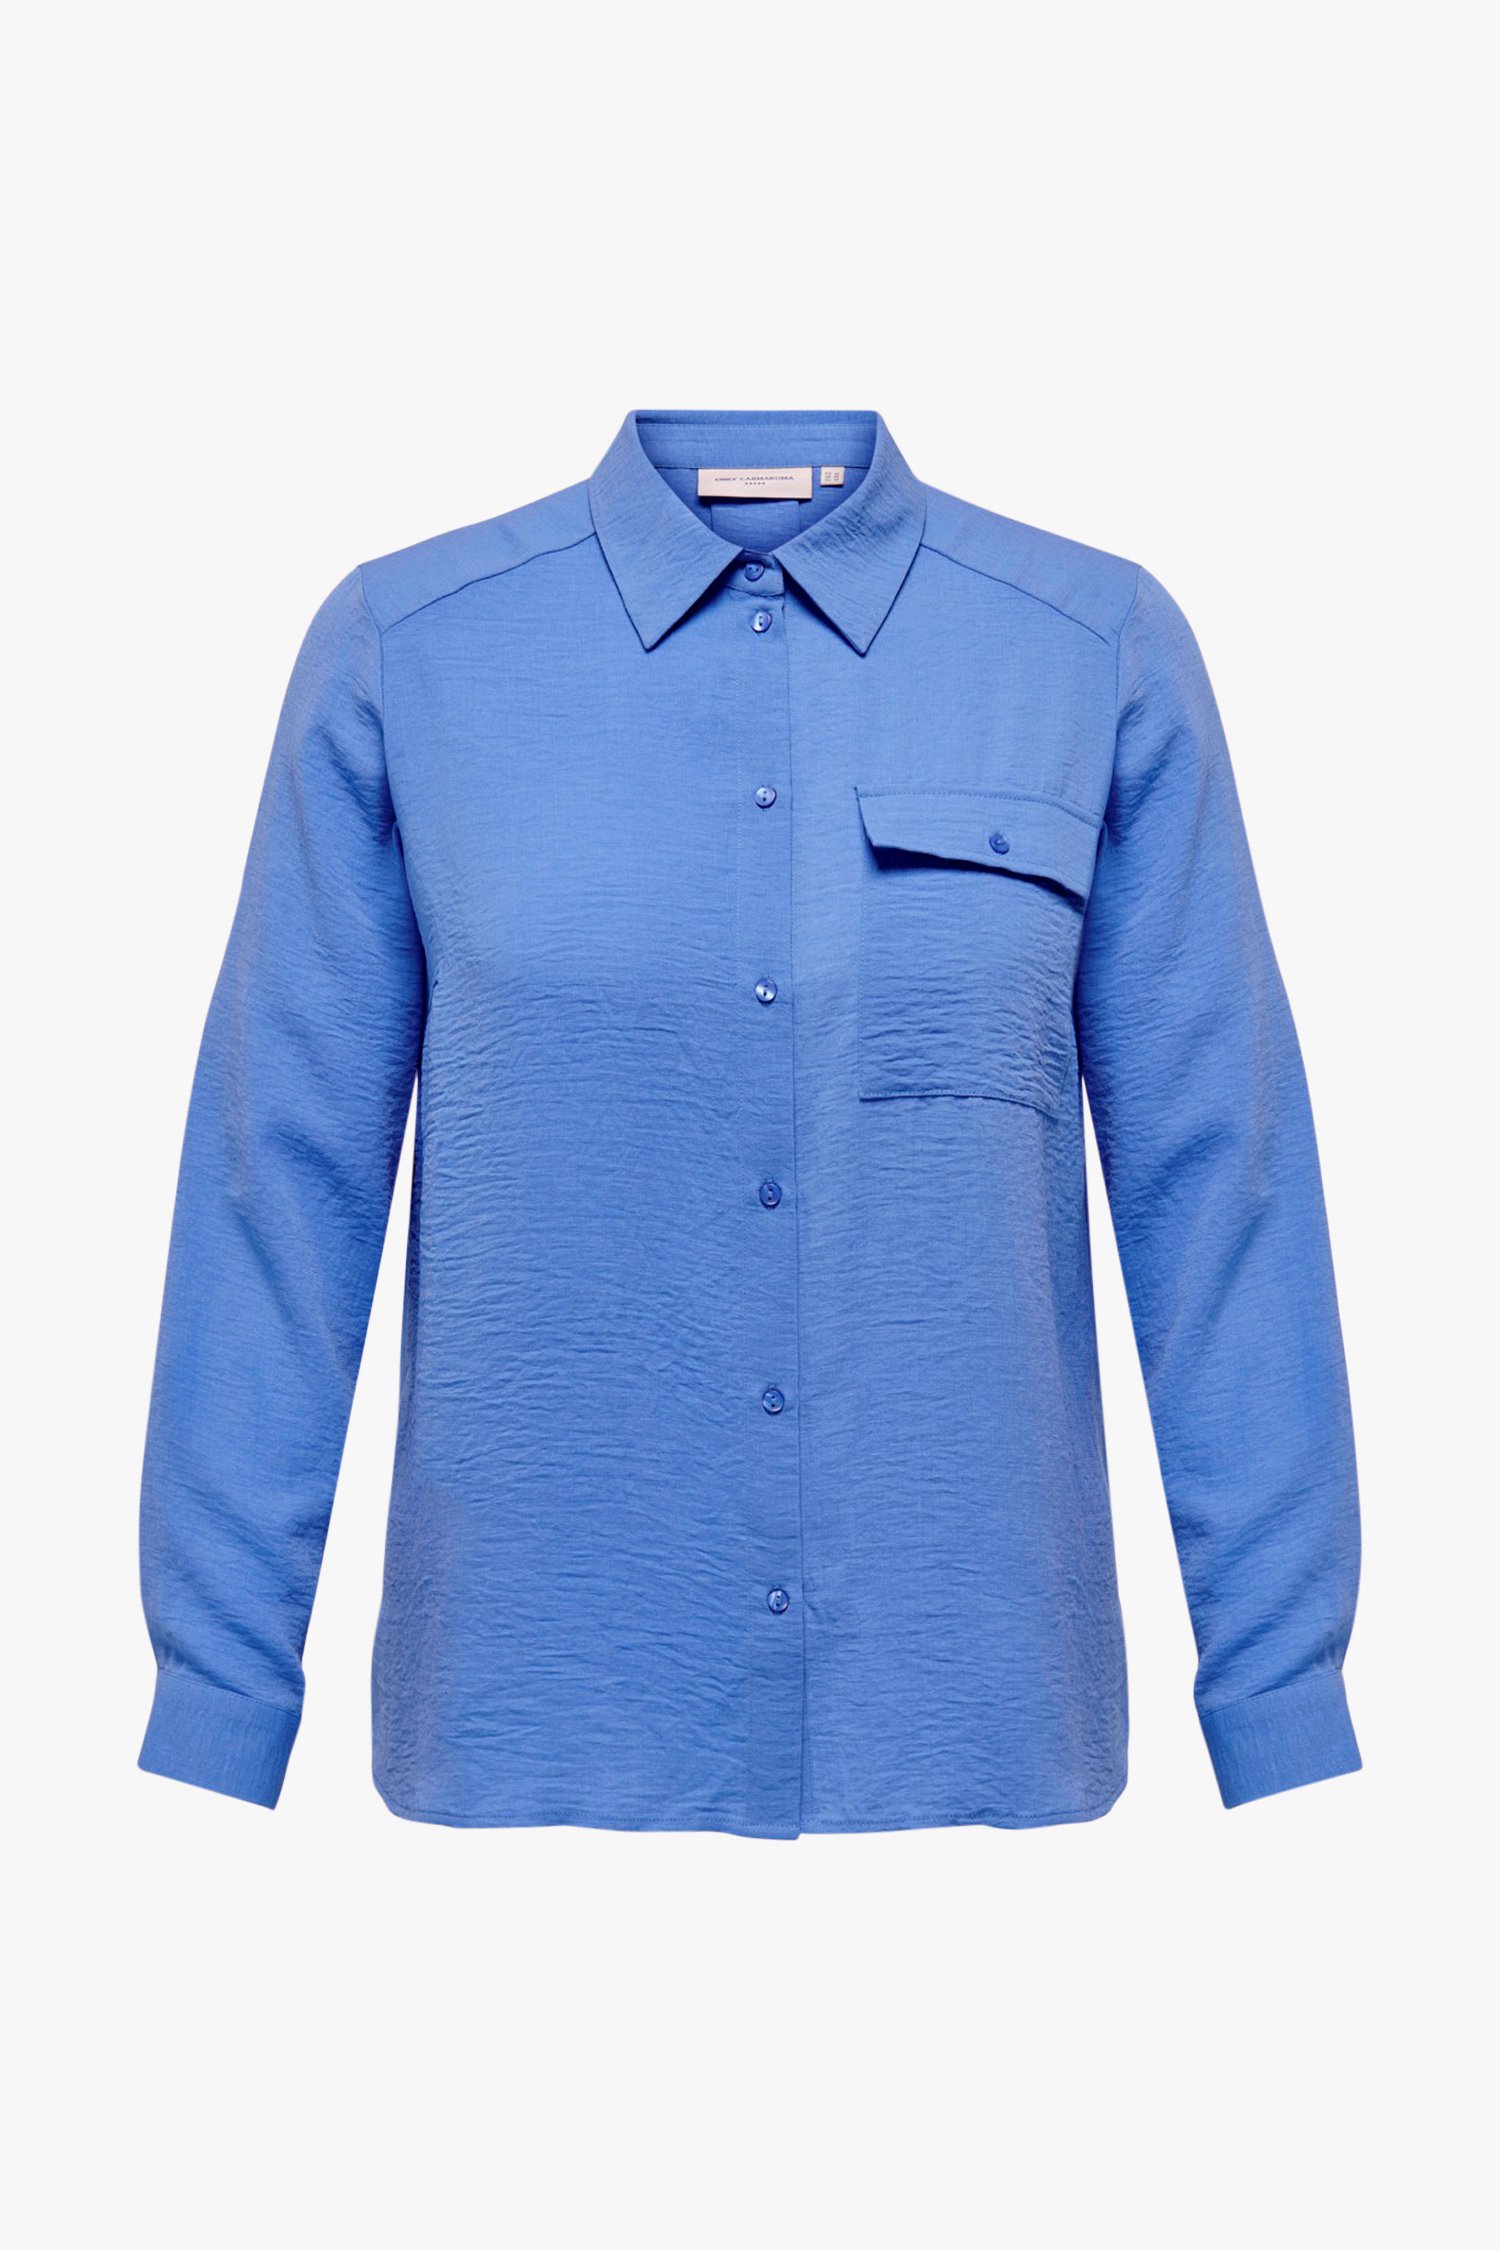 Blauwe blouse met lange mouwen van Only Carmakoma voor Dames